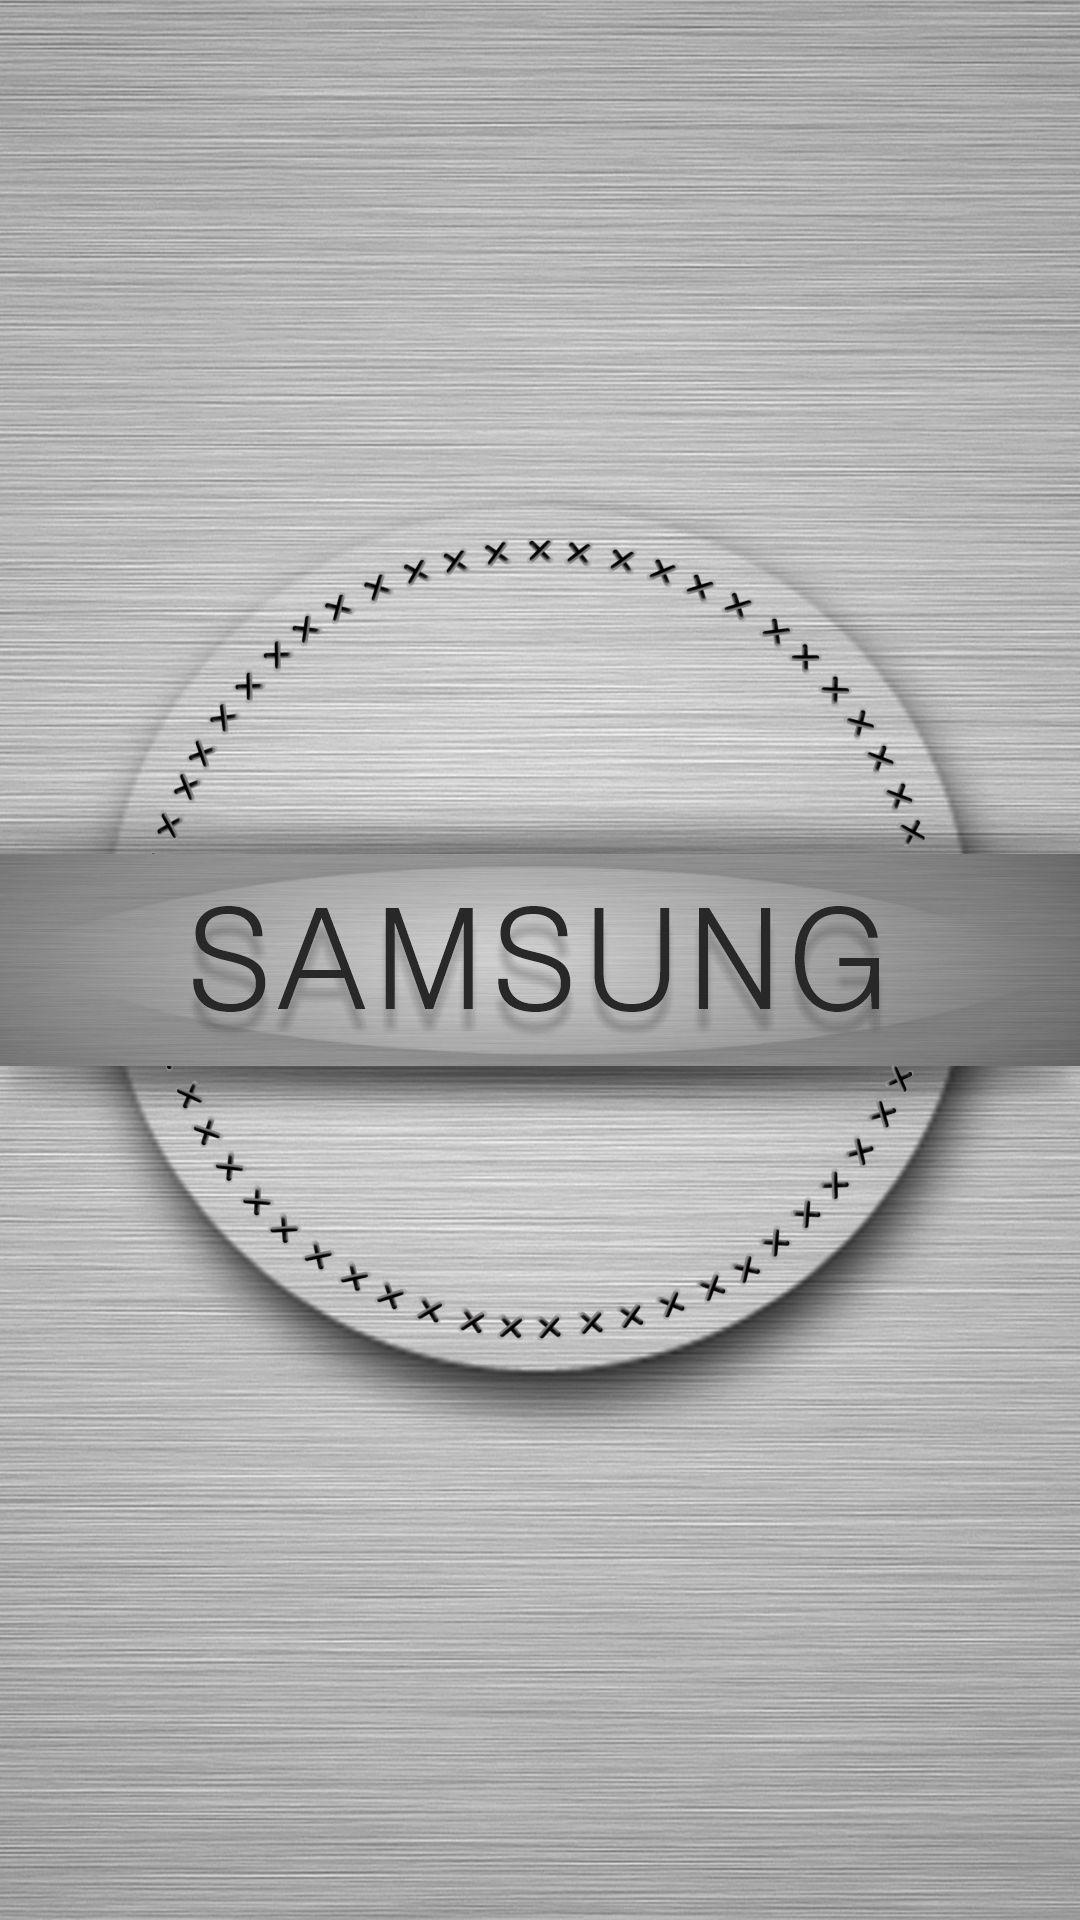 67+] Samsung Logo Wallpaper - WallpaperSafari